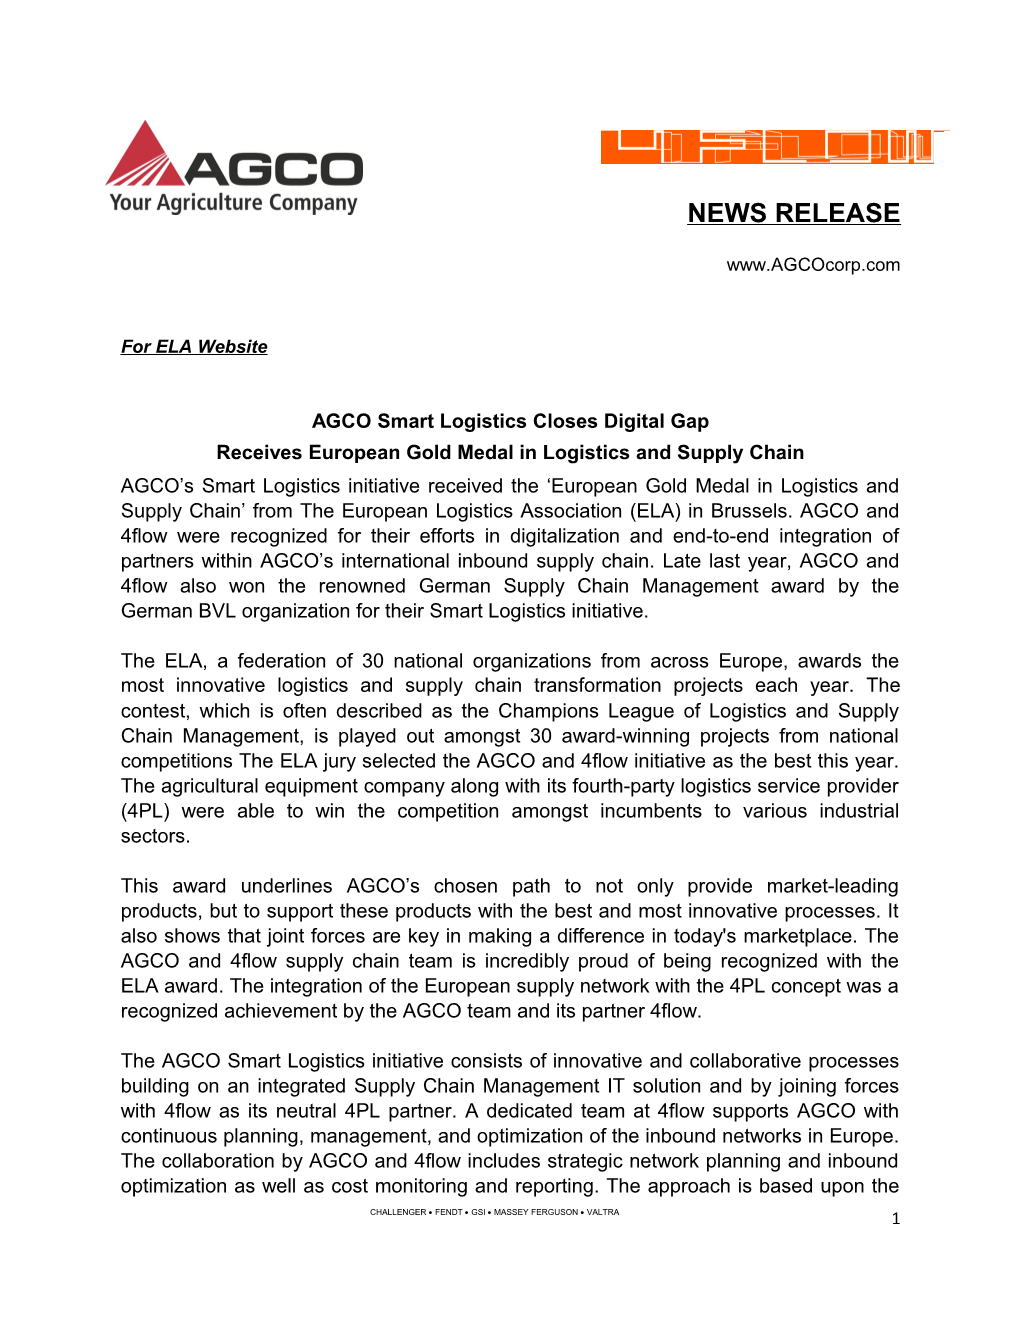 AGCO Smart Logistics Closes Digital Gap